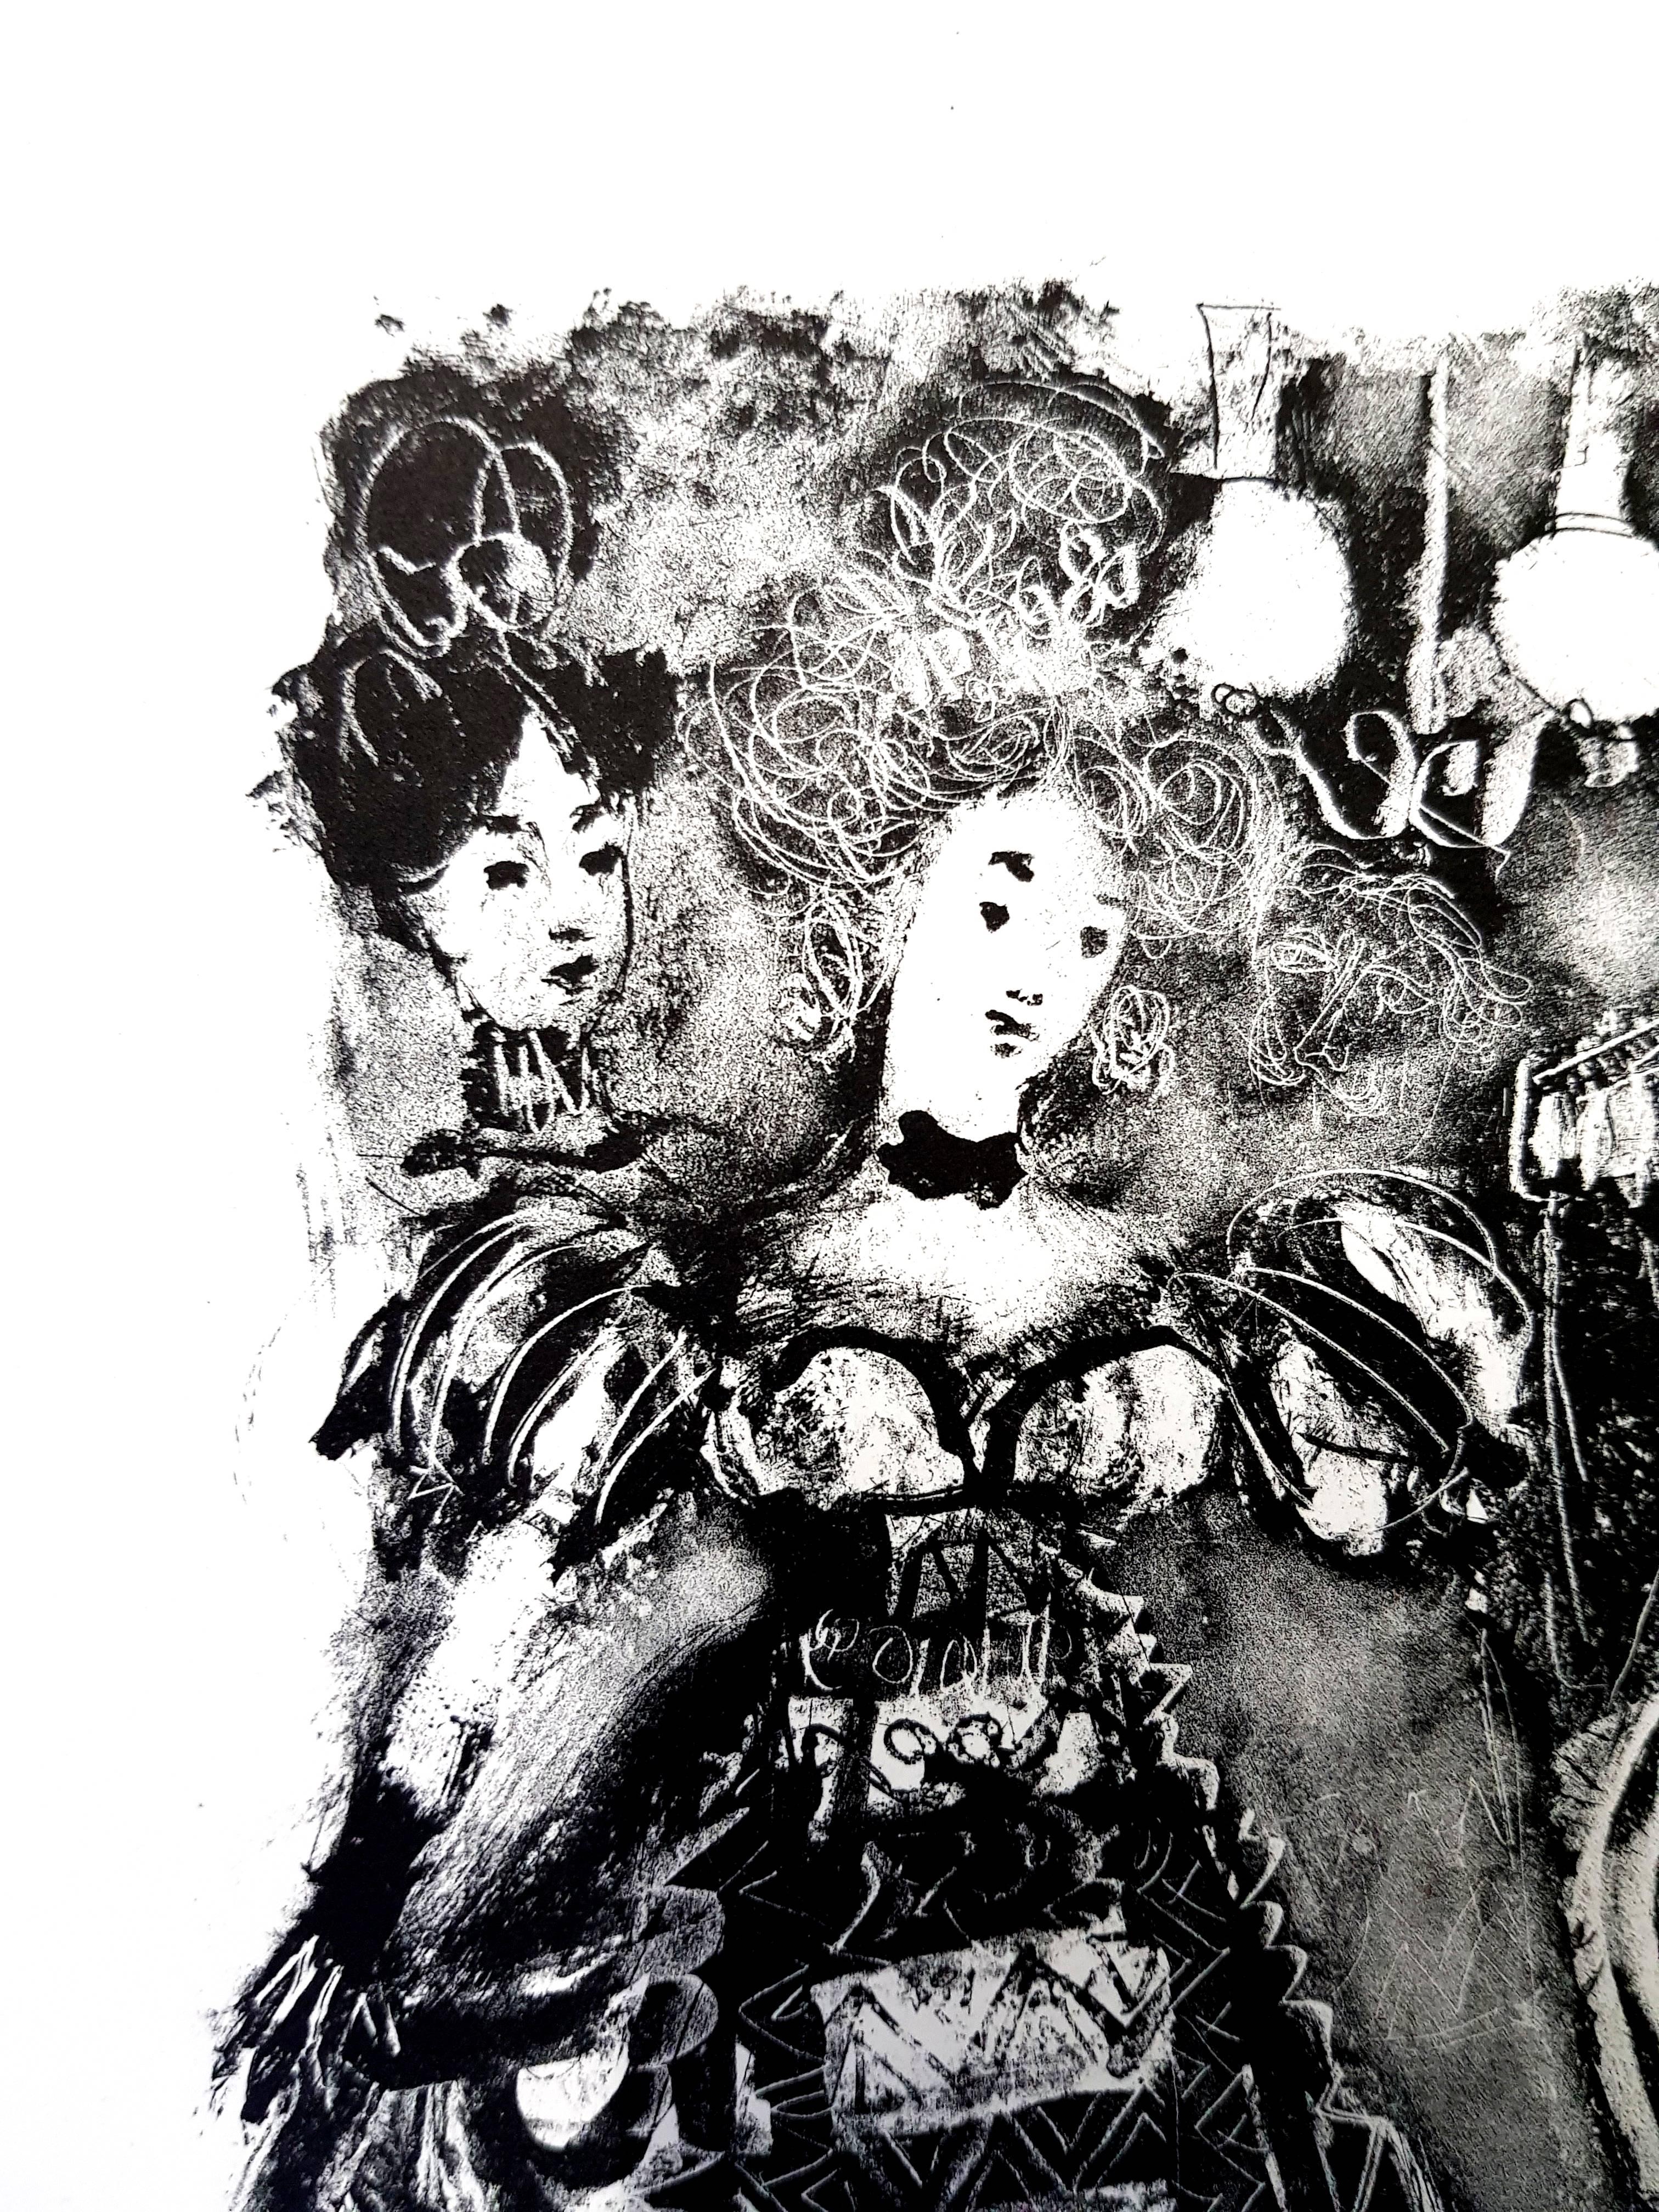 Antoni Clavé - Original Lithograph - For Alexander Pushkin's Queen of Spades
Dimensions: 325 x 247 mm.
1946
Original lithograph of Antoni Clavé 
Edition: 300 
The Queen of Spades. Translation by Prosper Mérimée. In Paris, Editions du Pré aux